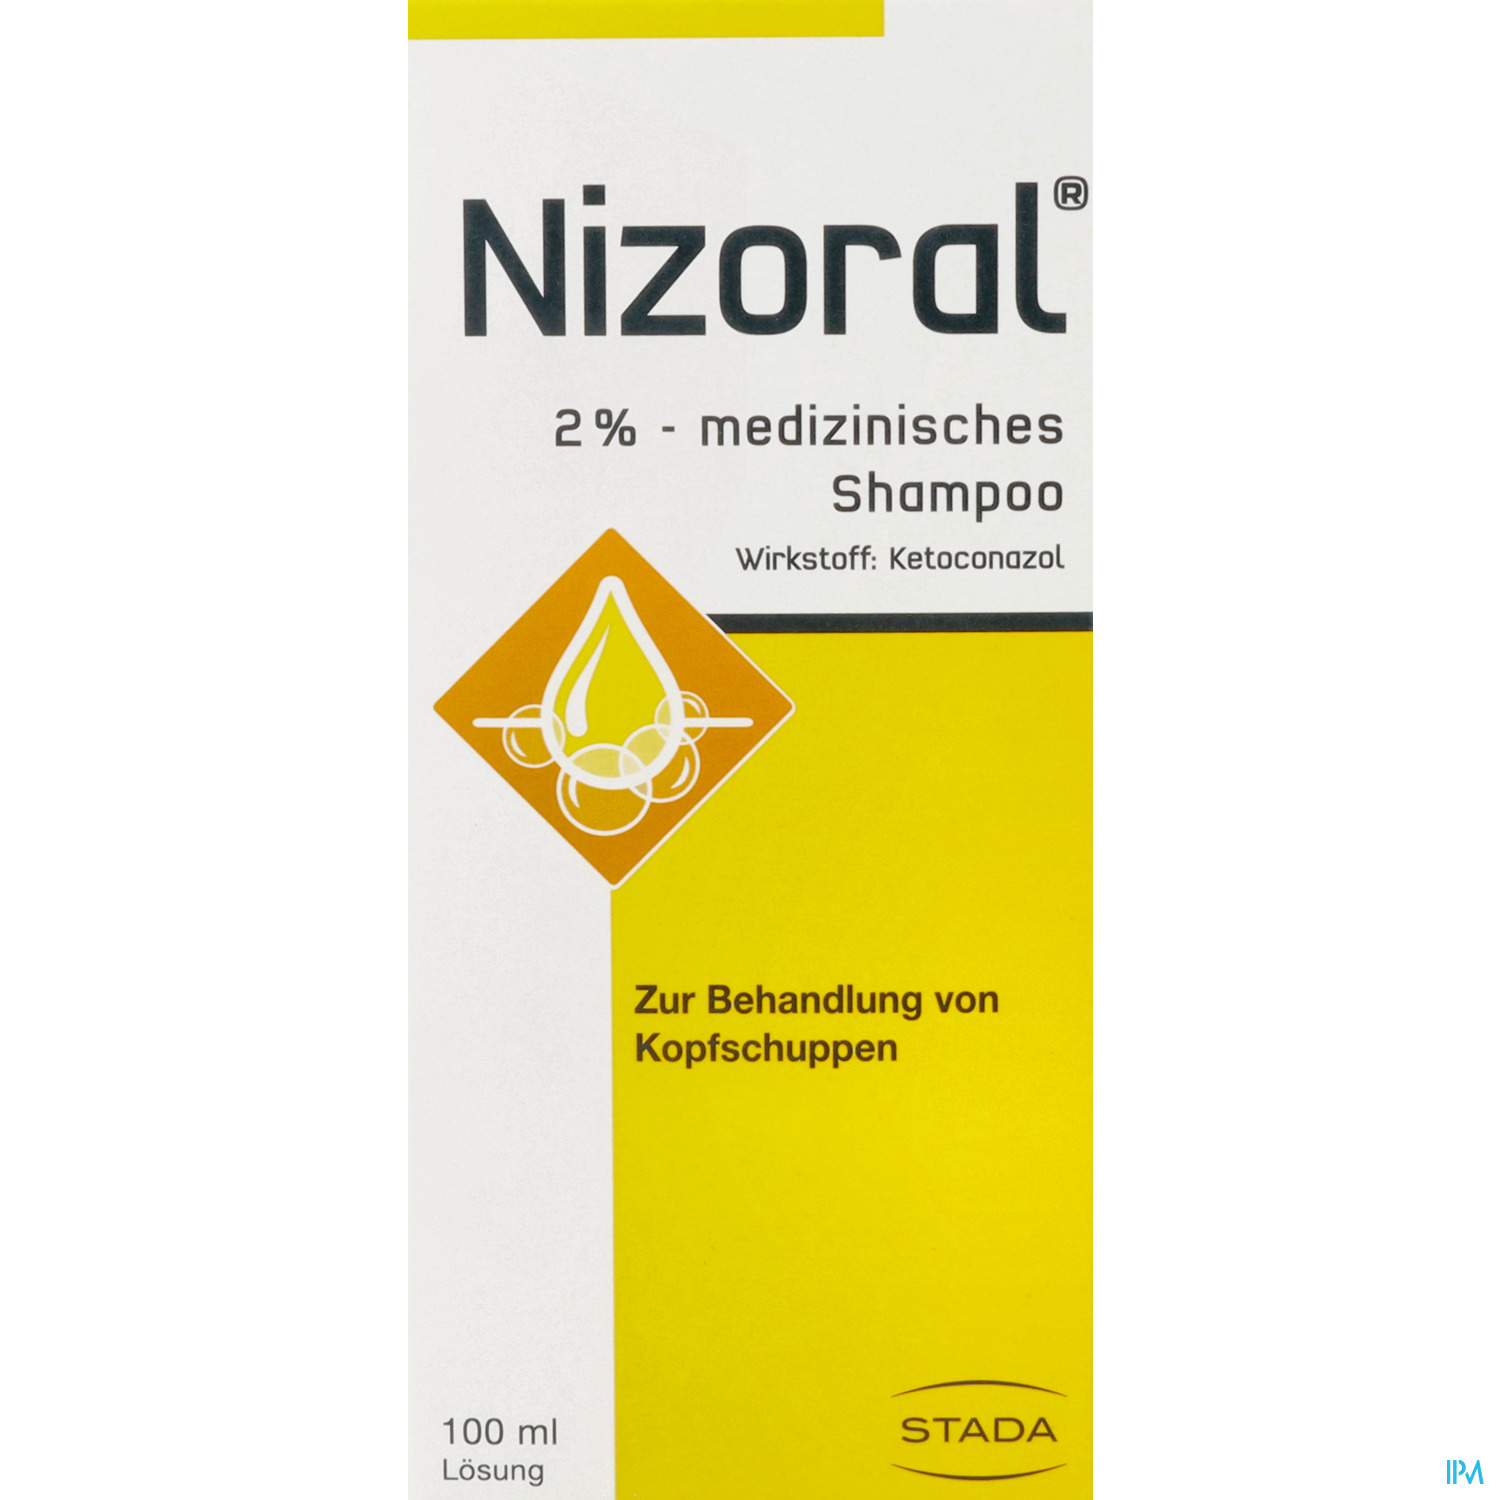 Nizoral 2% - medizinisches Shampoo